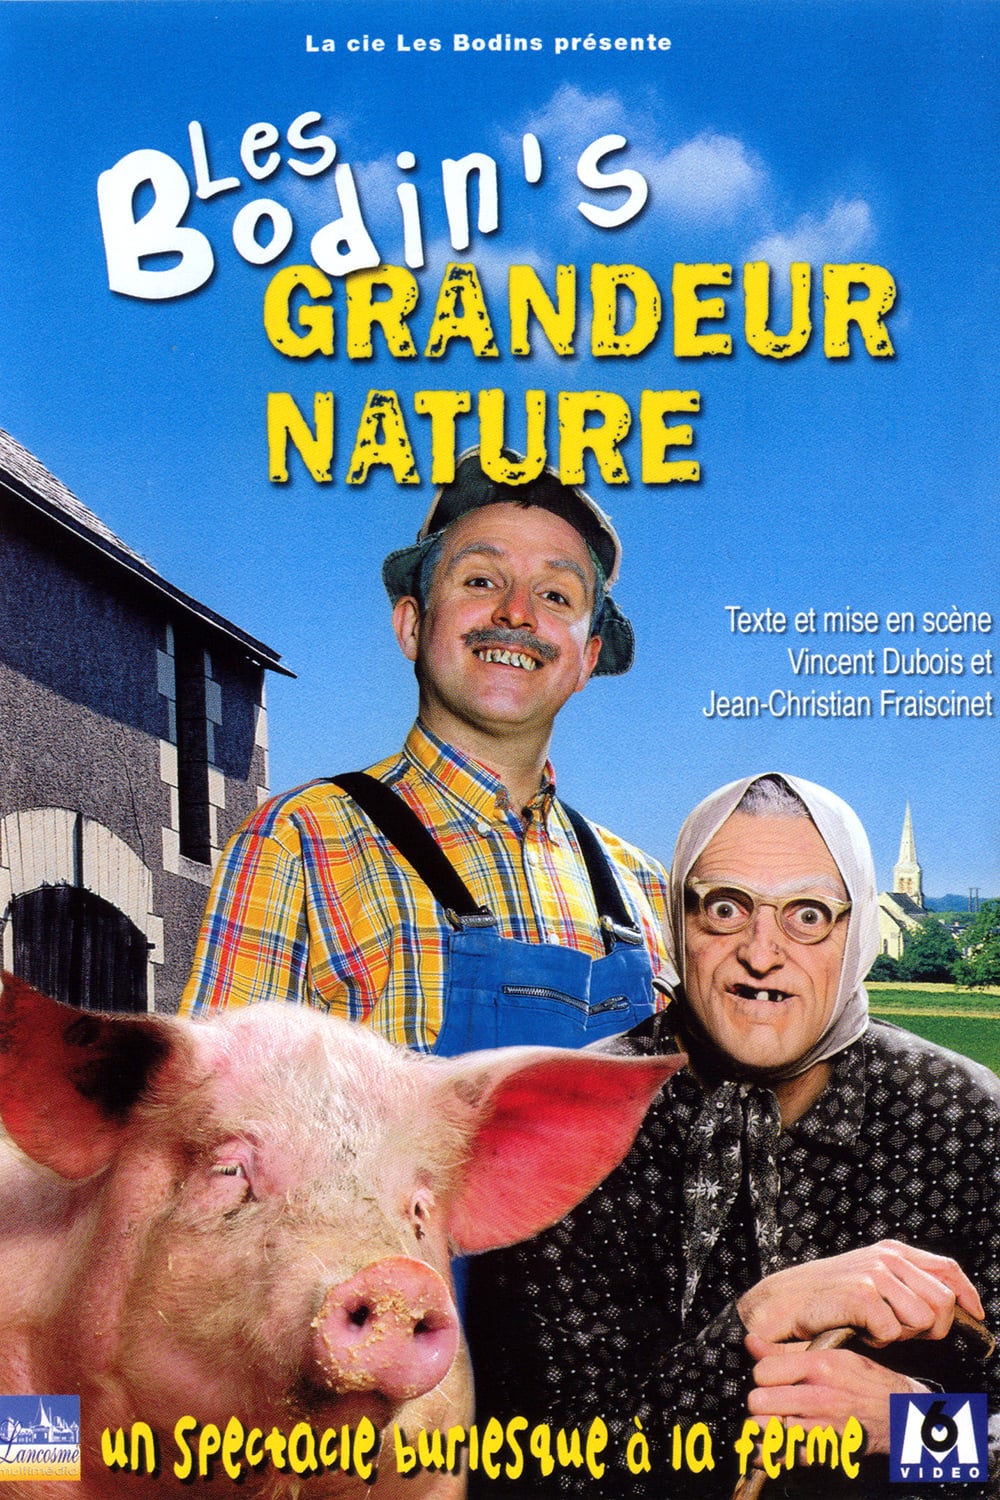 Affiche du film "Les Bodin's: grandeur nature"